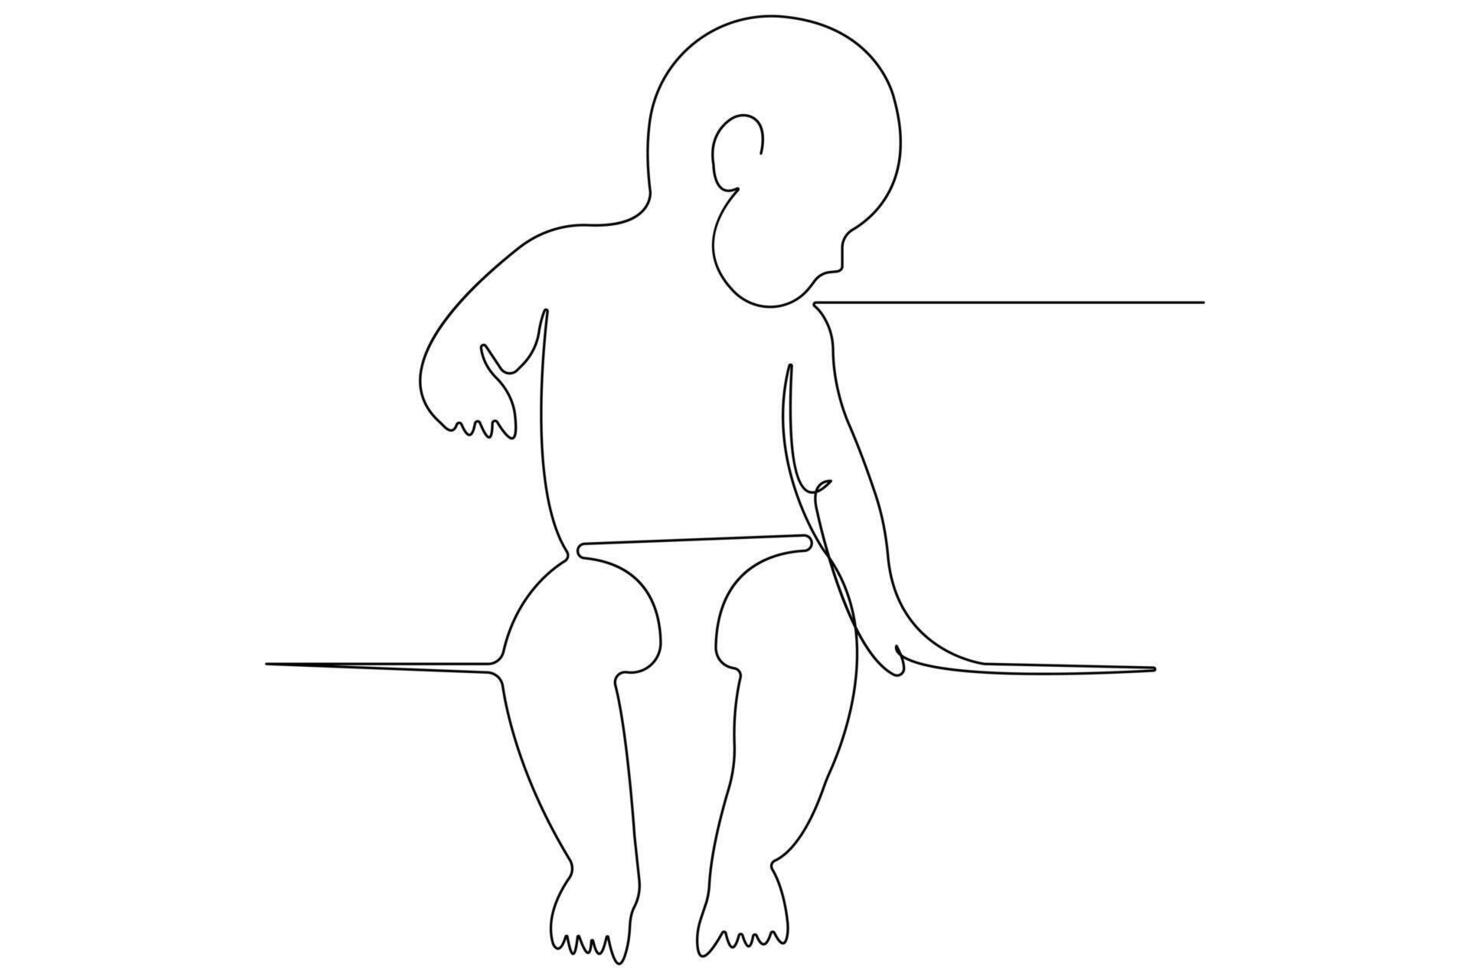 doorlopend single lijn kunst tekening van baby schetsen en concept schets vector